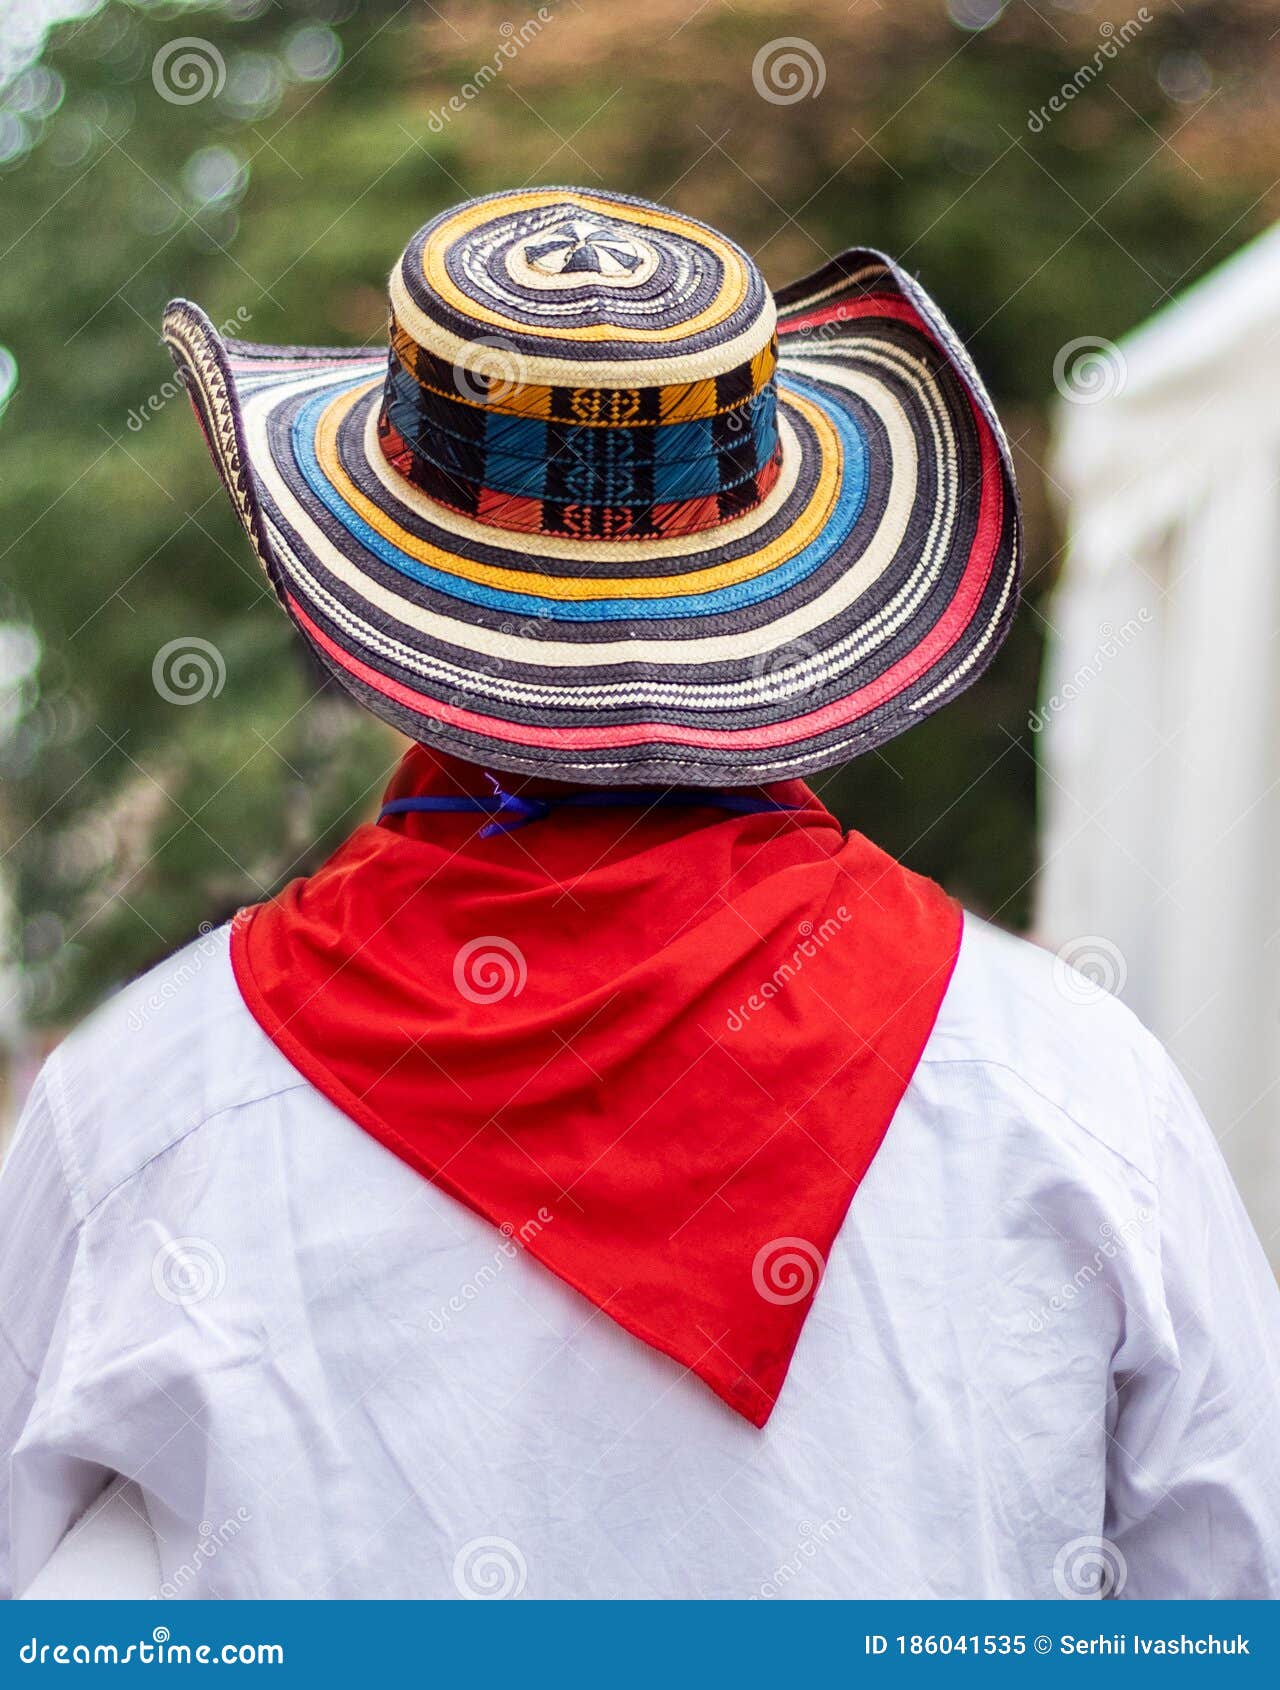 Hombre Con Pañuelo Rojo Y Sombrero Blanco. de archivo - de ropas, 186041535